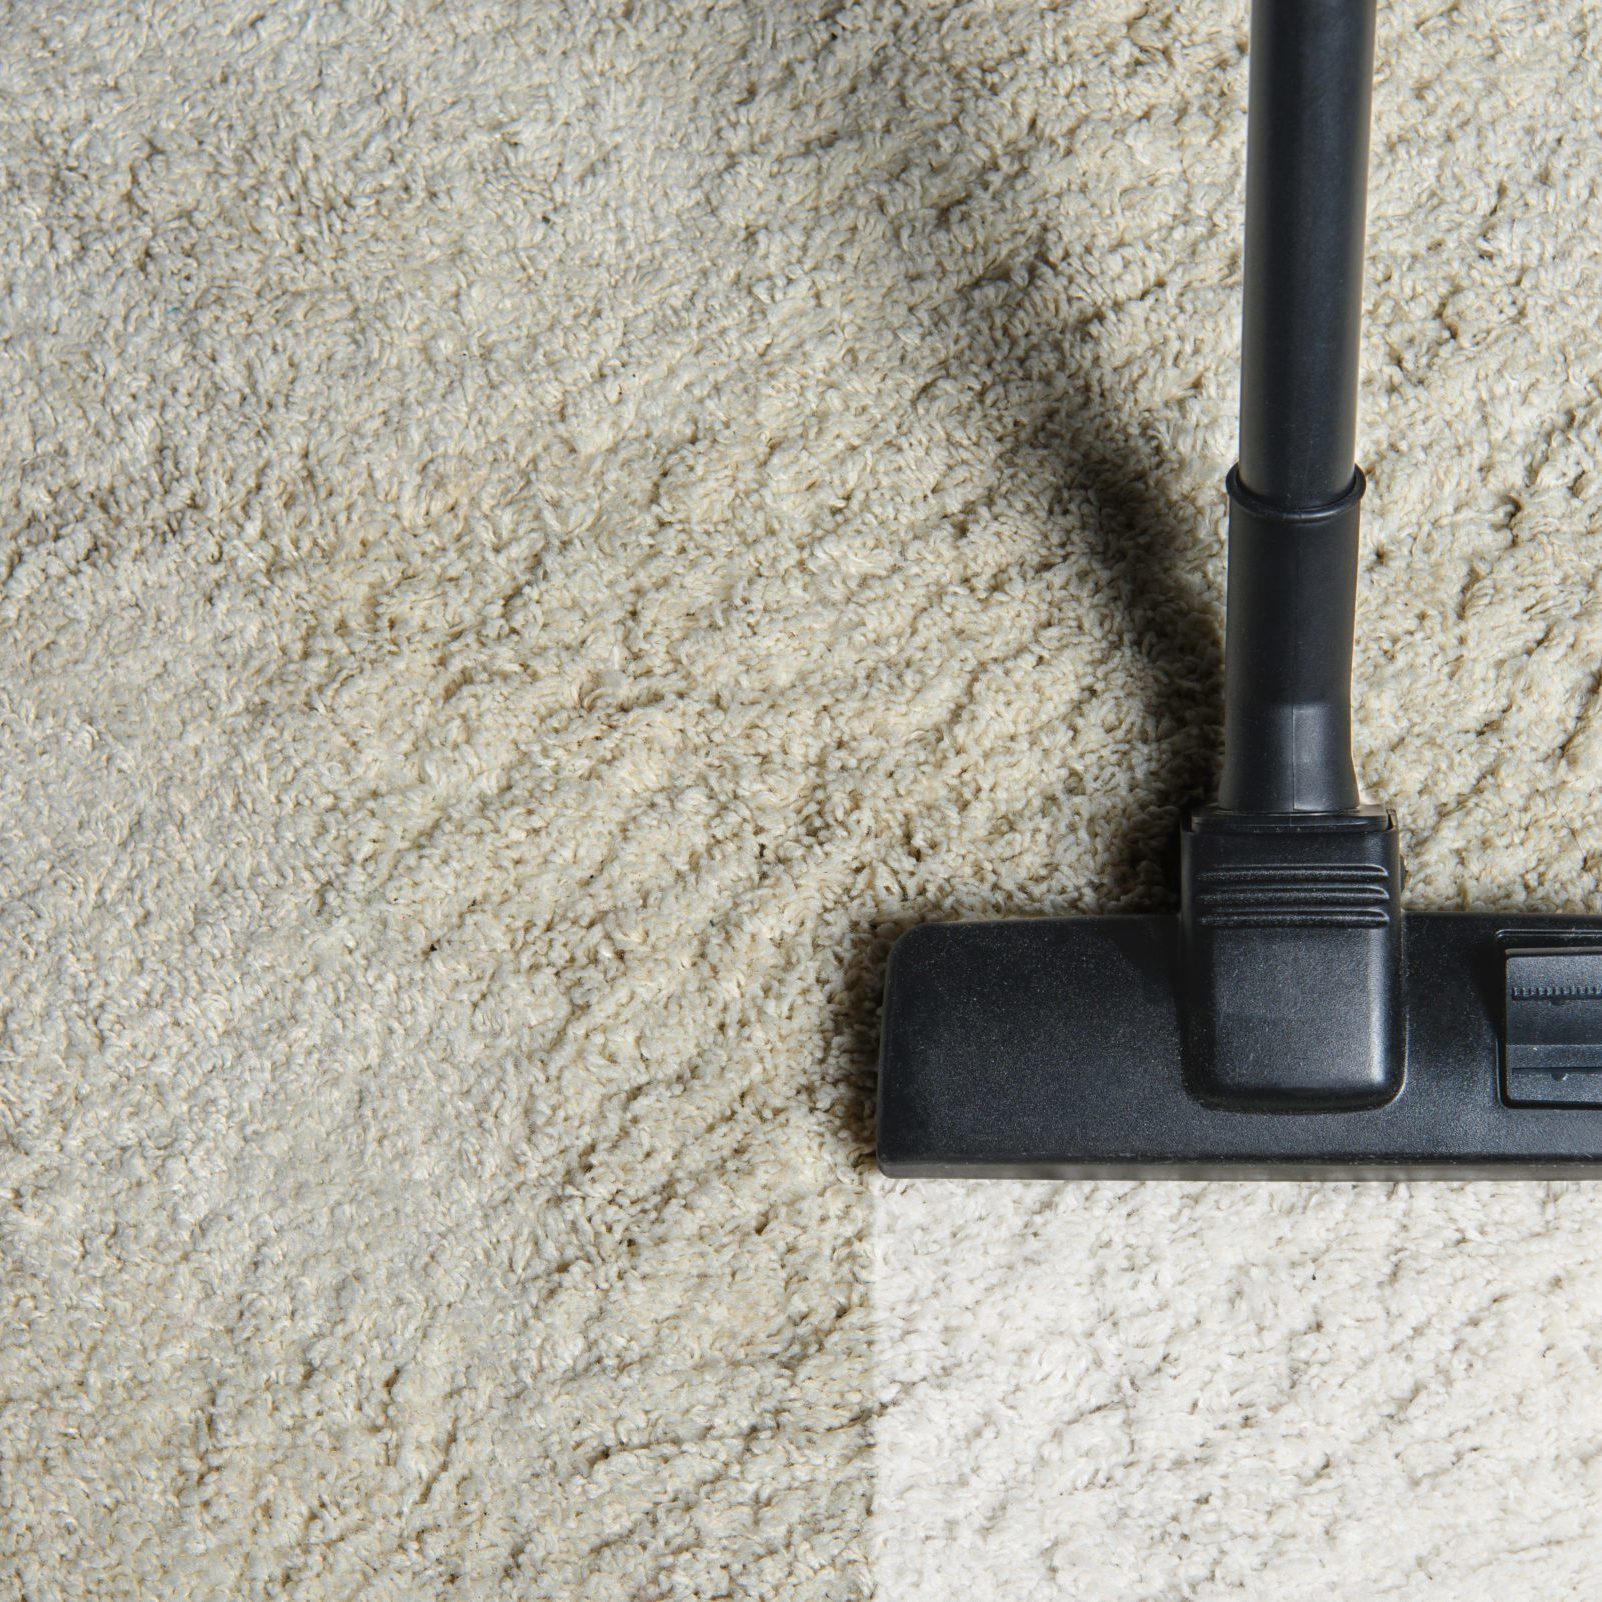 Carpet Cleaning | Envirowash | Pressure Washing in Newport News & Yorktown VA